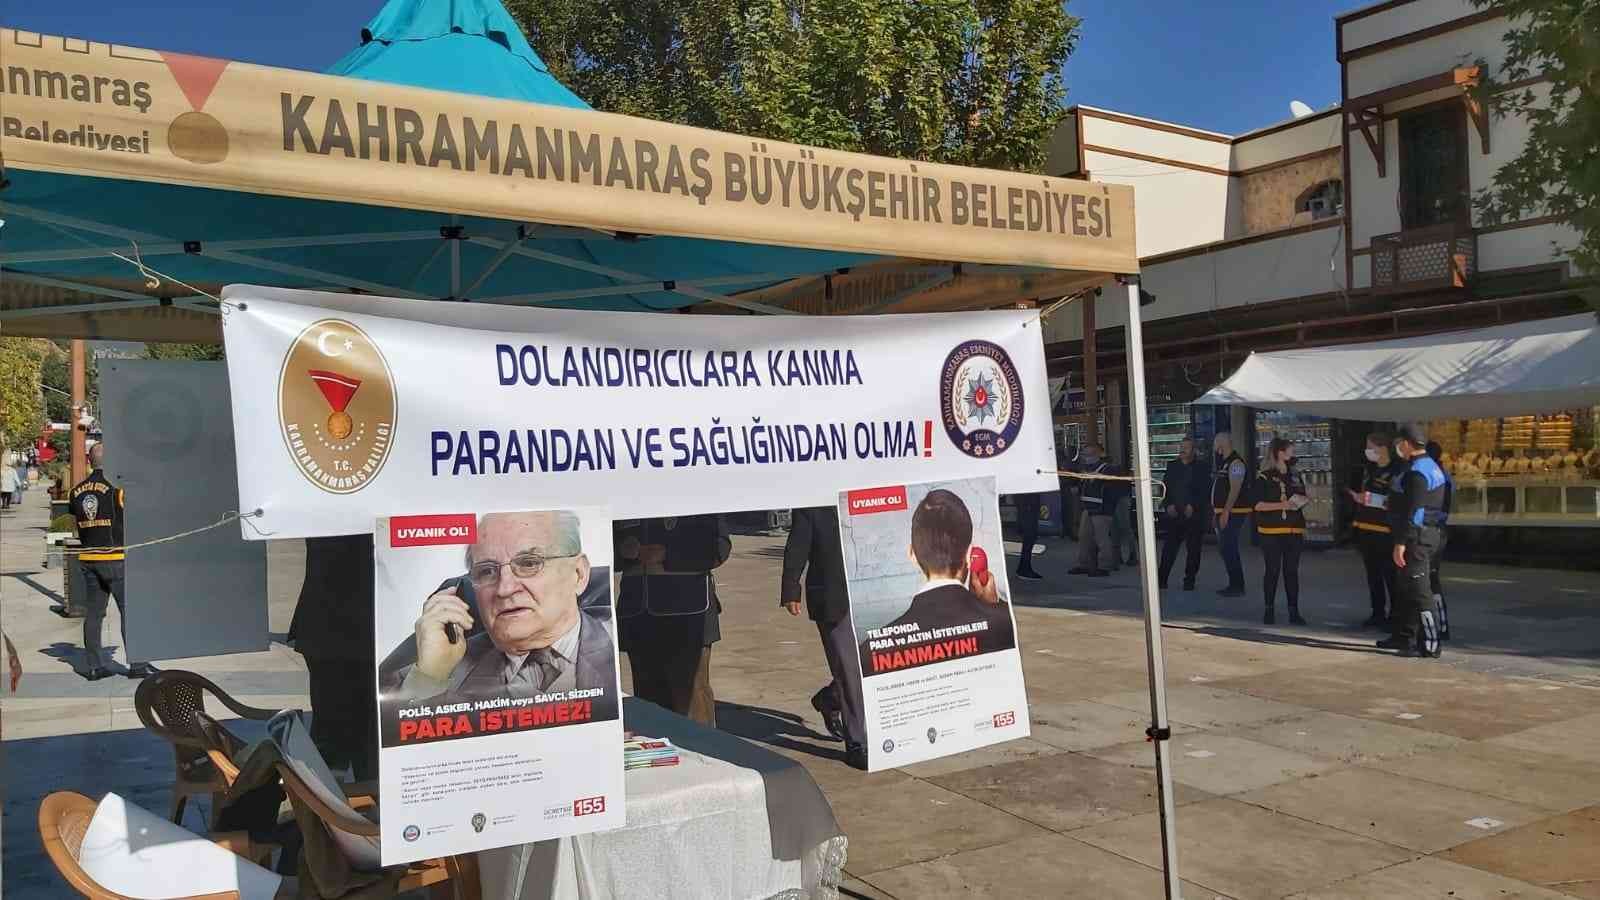 Vatandaşlar dolandırıcılara karşı bilinçlendiriliyor #kahramanmaras